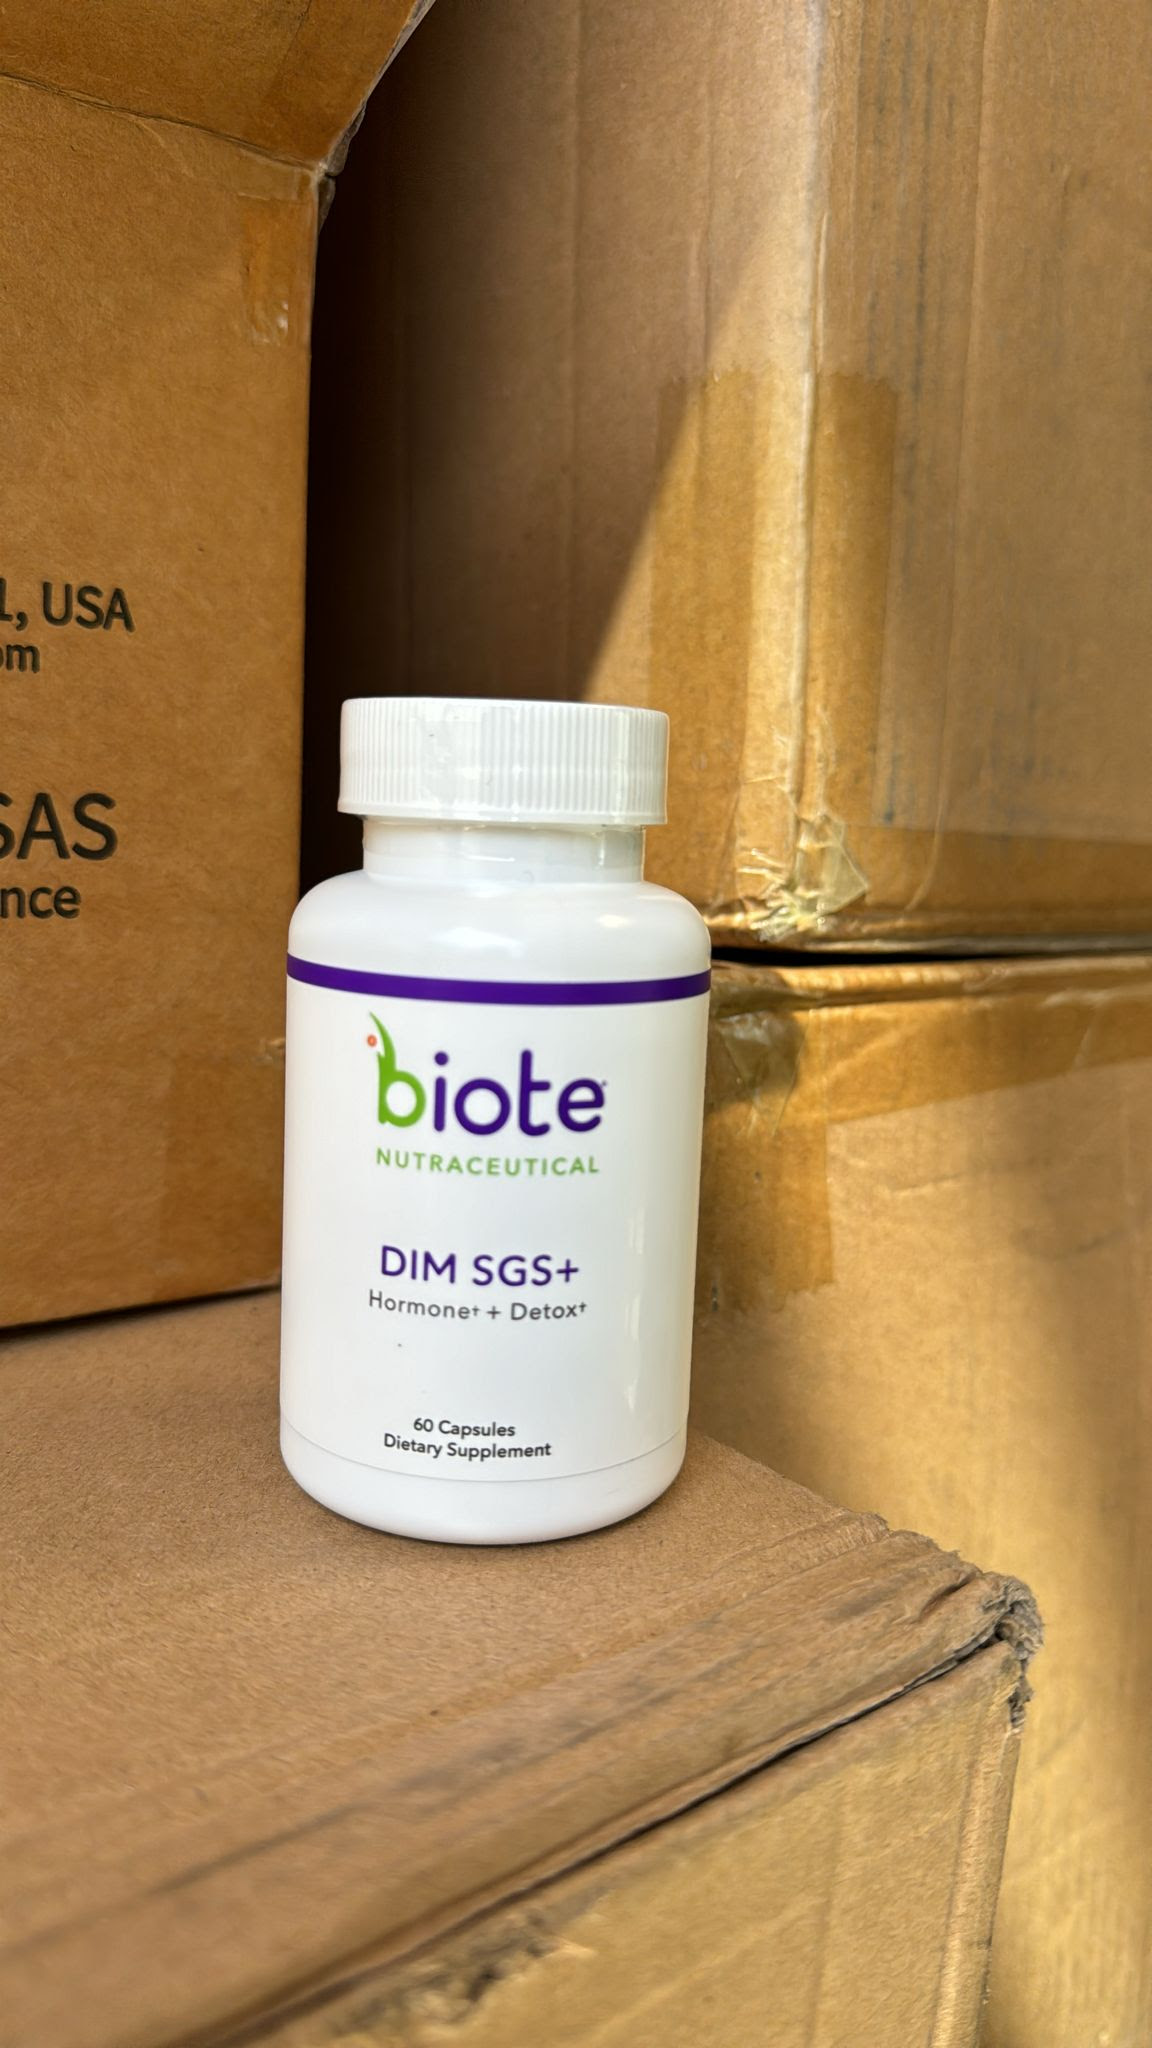 bioTE 60 Capsules Nutraceuticals DIM SGS + Hormone + Detox .  10,000 units.  EXW Los Angeles $8.50 unit.